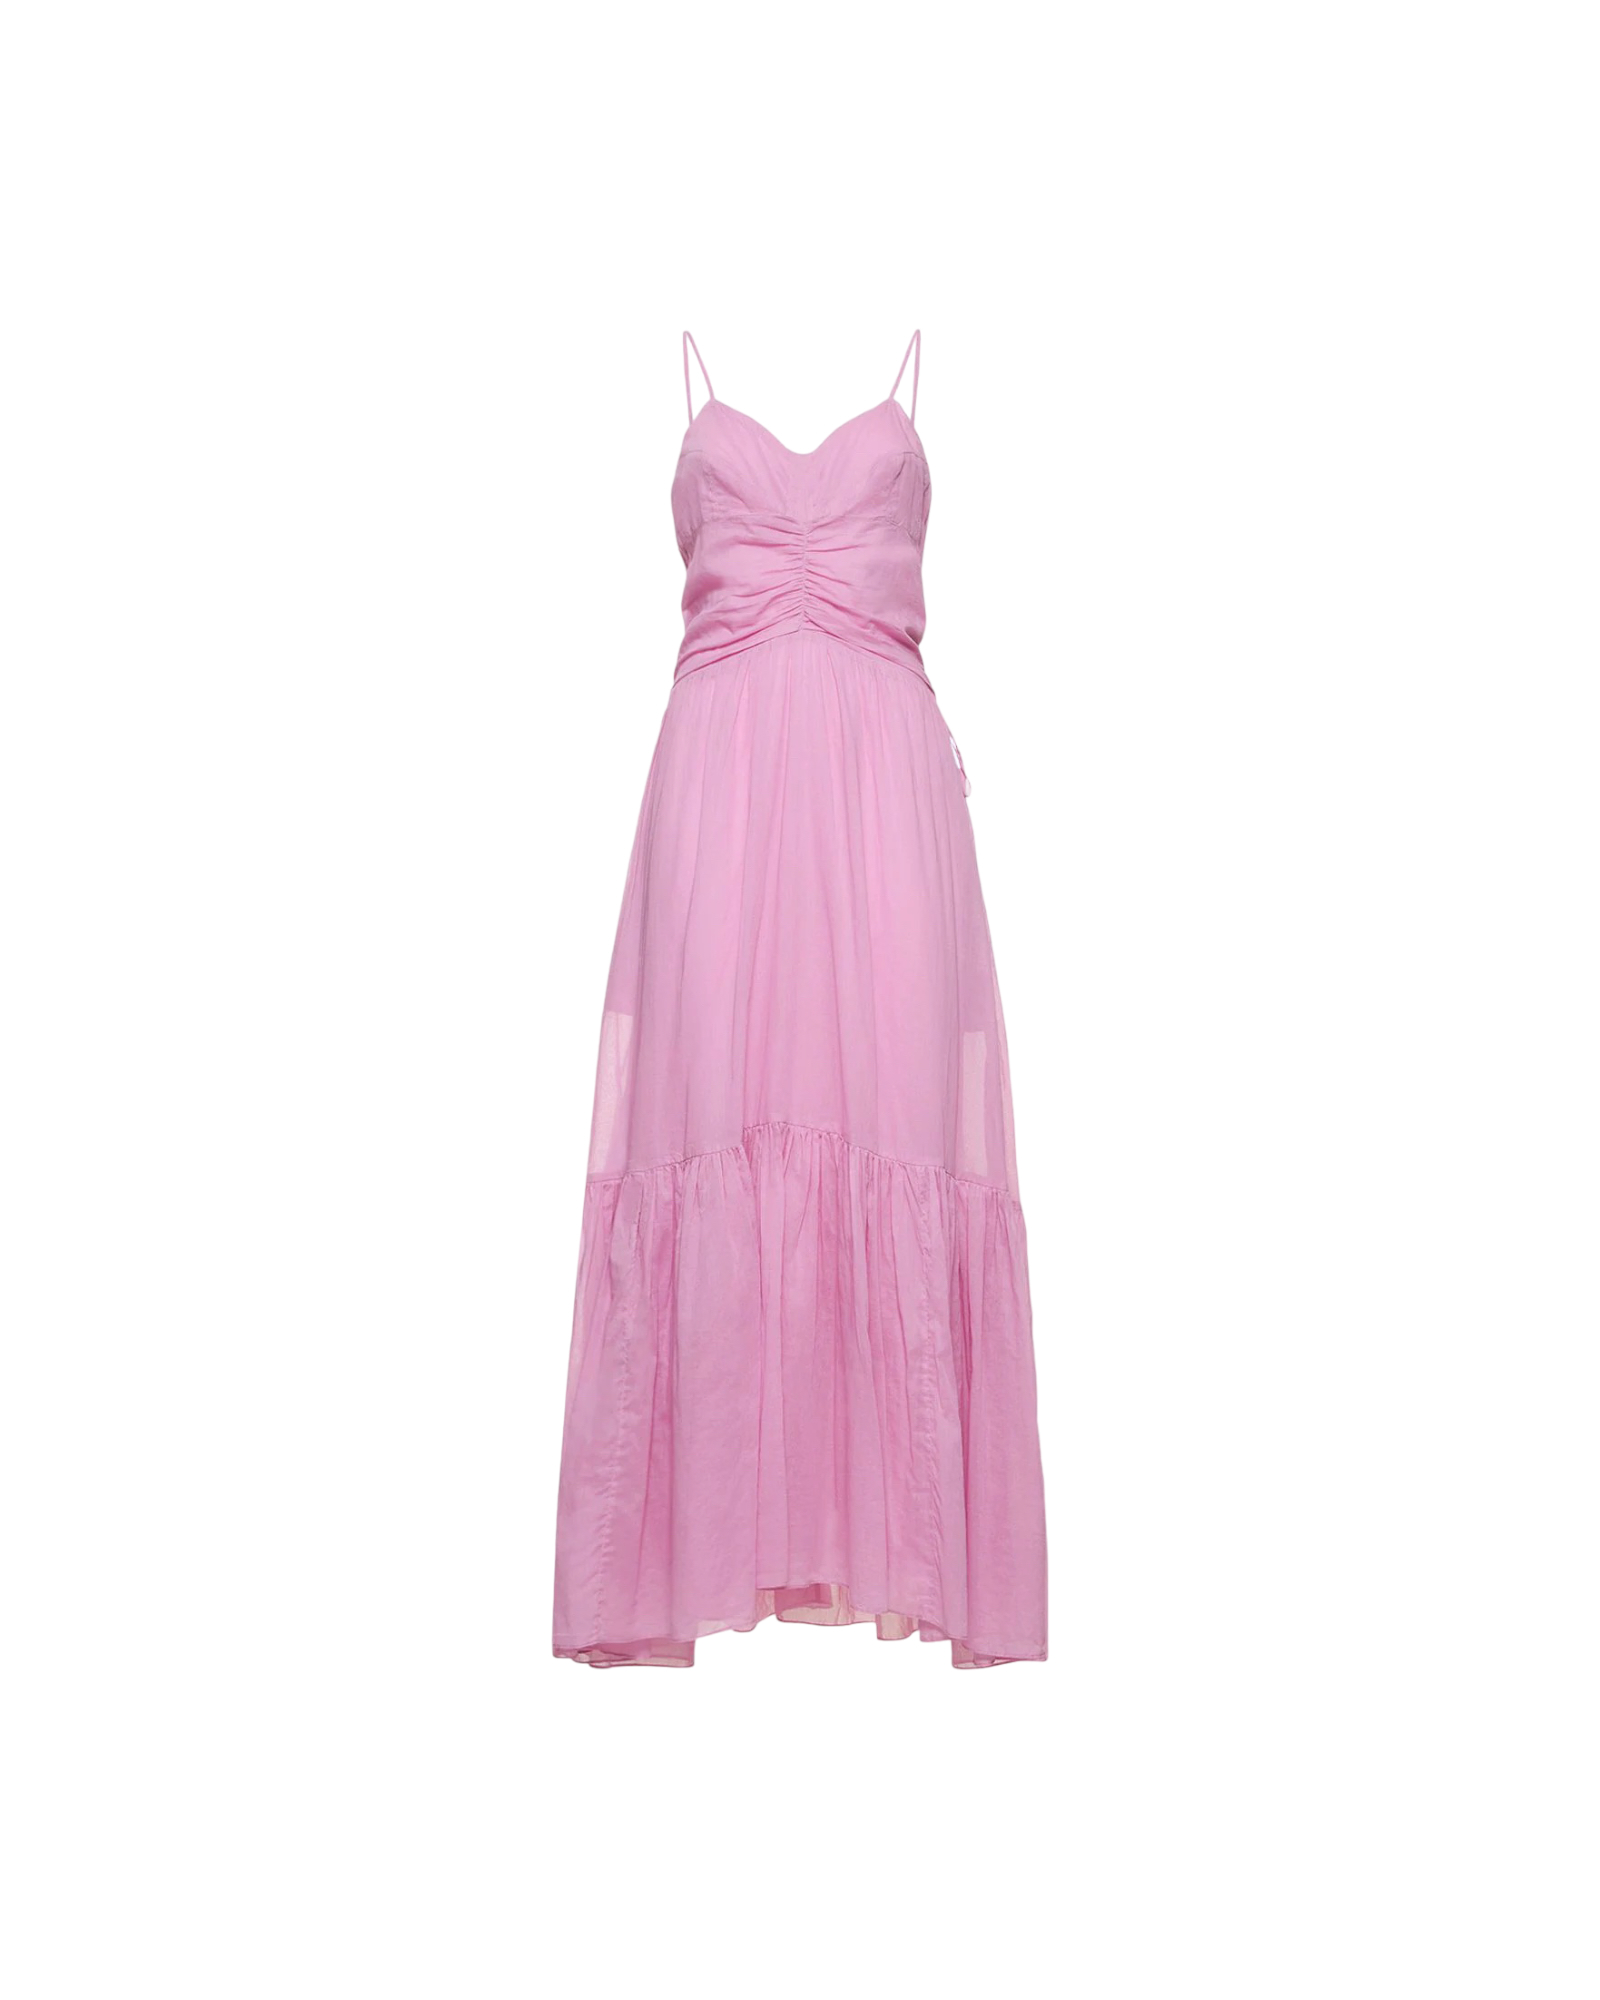 Kleid Giana pink ISABEL MARANT ETOILE, RO0001FA-A1J03E, GIANA, ISABEL MARANT